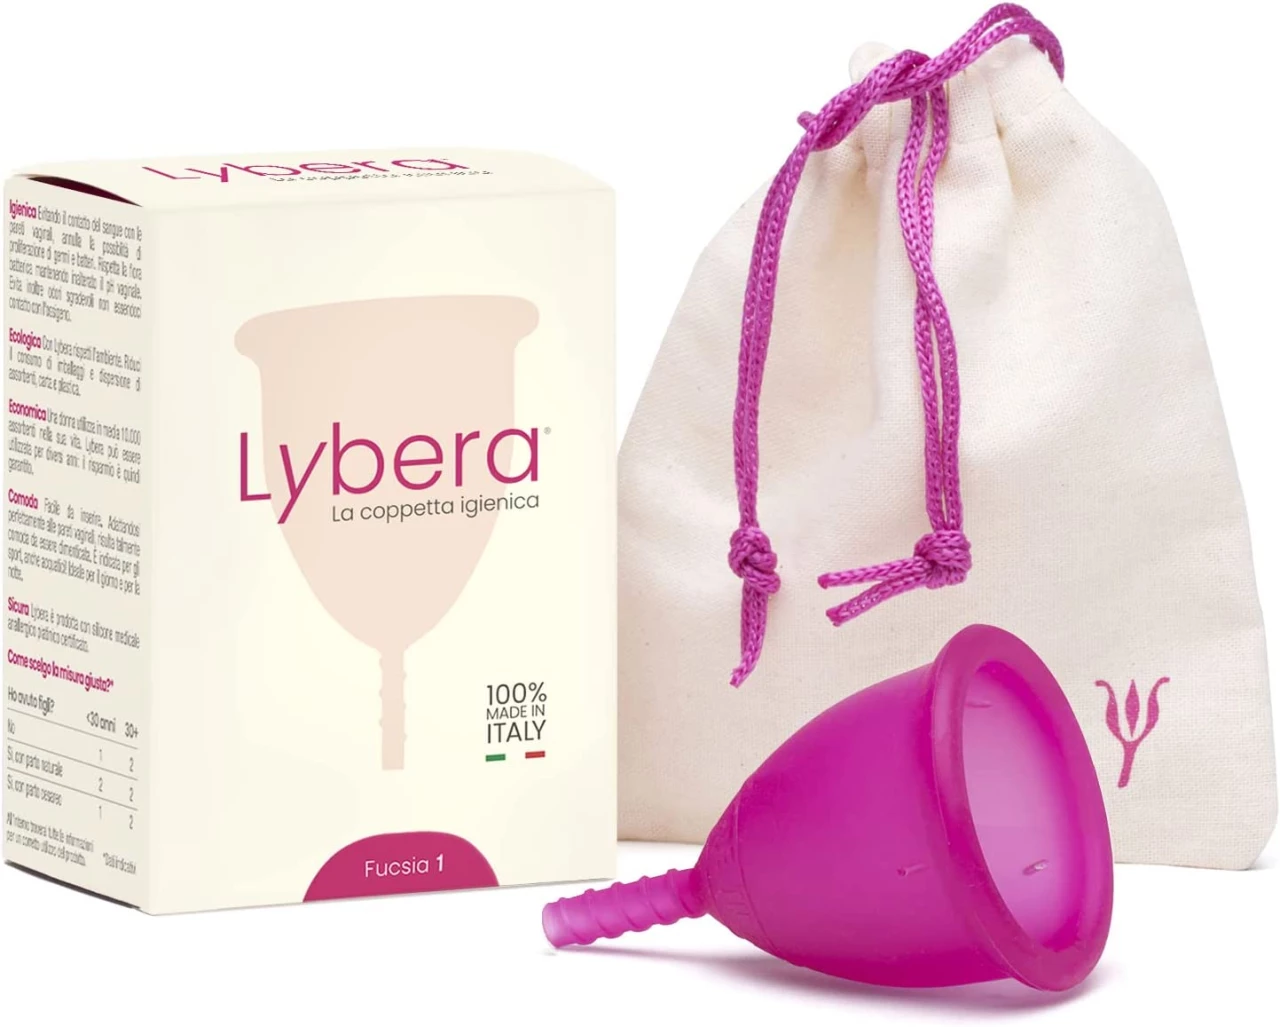 Lybera Copa menstrual fabricada en Italia, copa menstrual suave, segura, de silicona médica, ecológica, para higiene íntima, cómoda, disponible en 2 tallas, talla 1, color fucsia